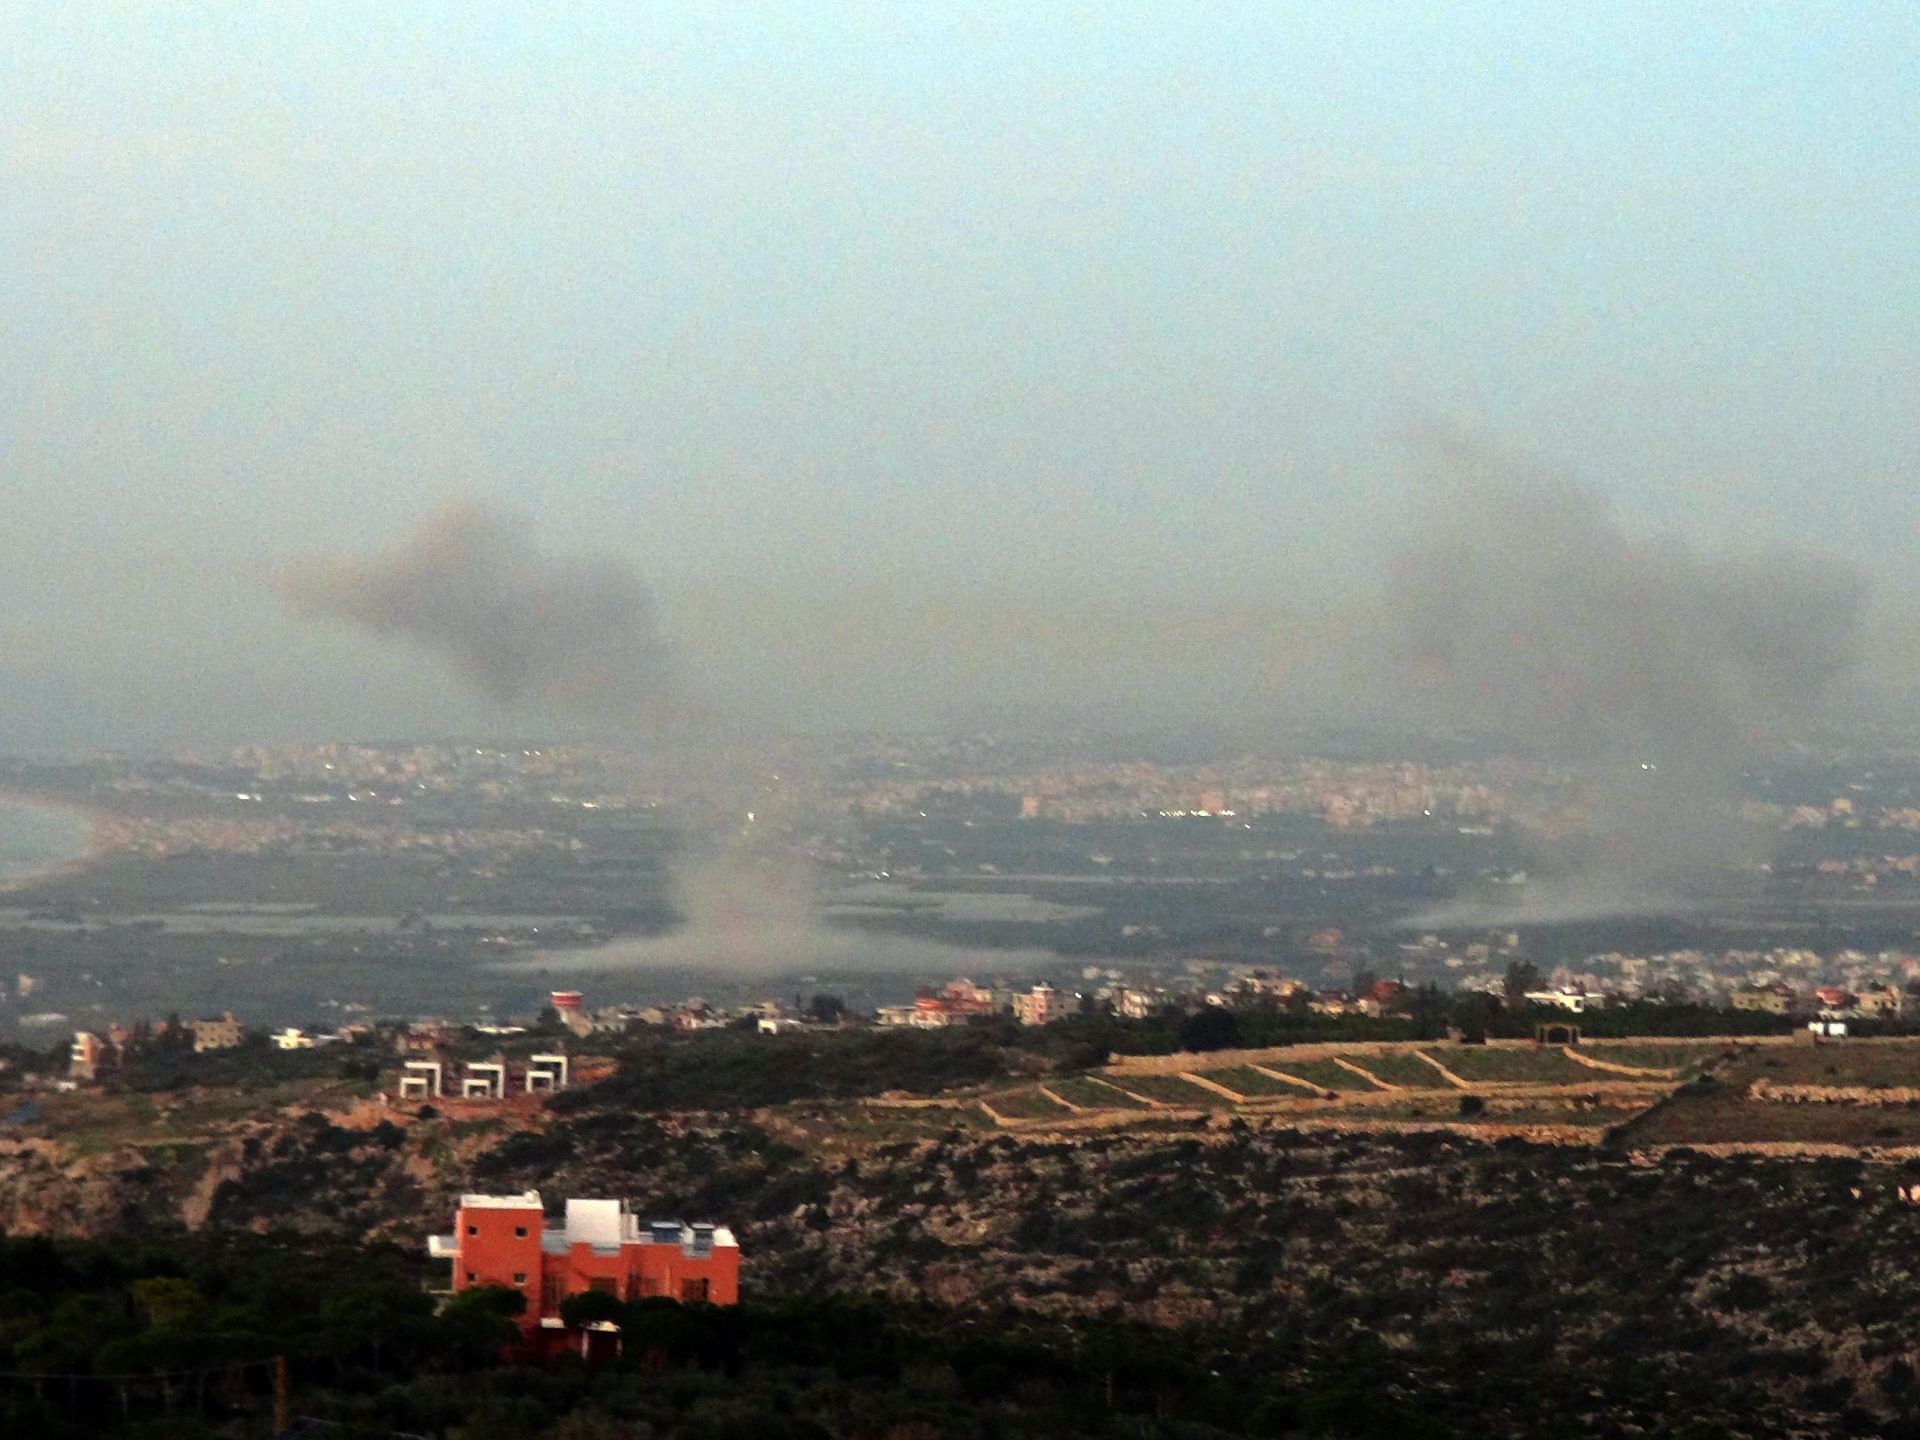 الجيش الإسرائيلي يغِير على عدة قرى جنوب لبنان | أخبار – البوكس نيوز